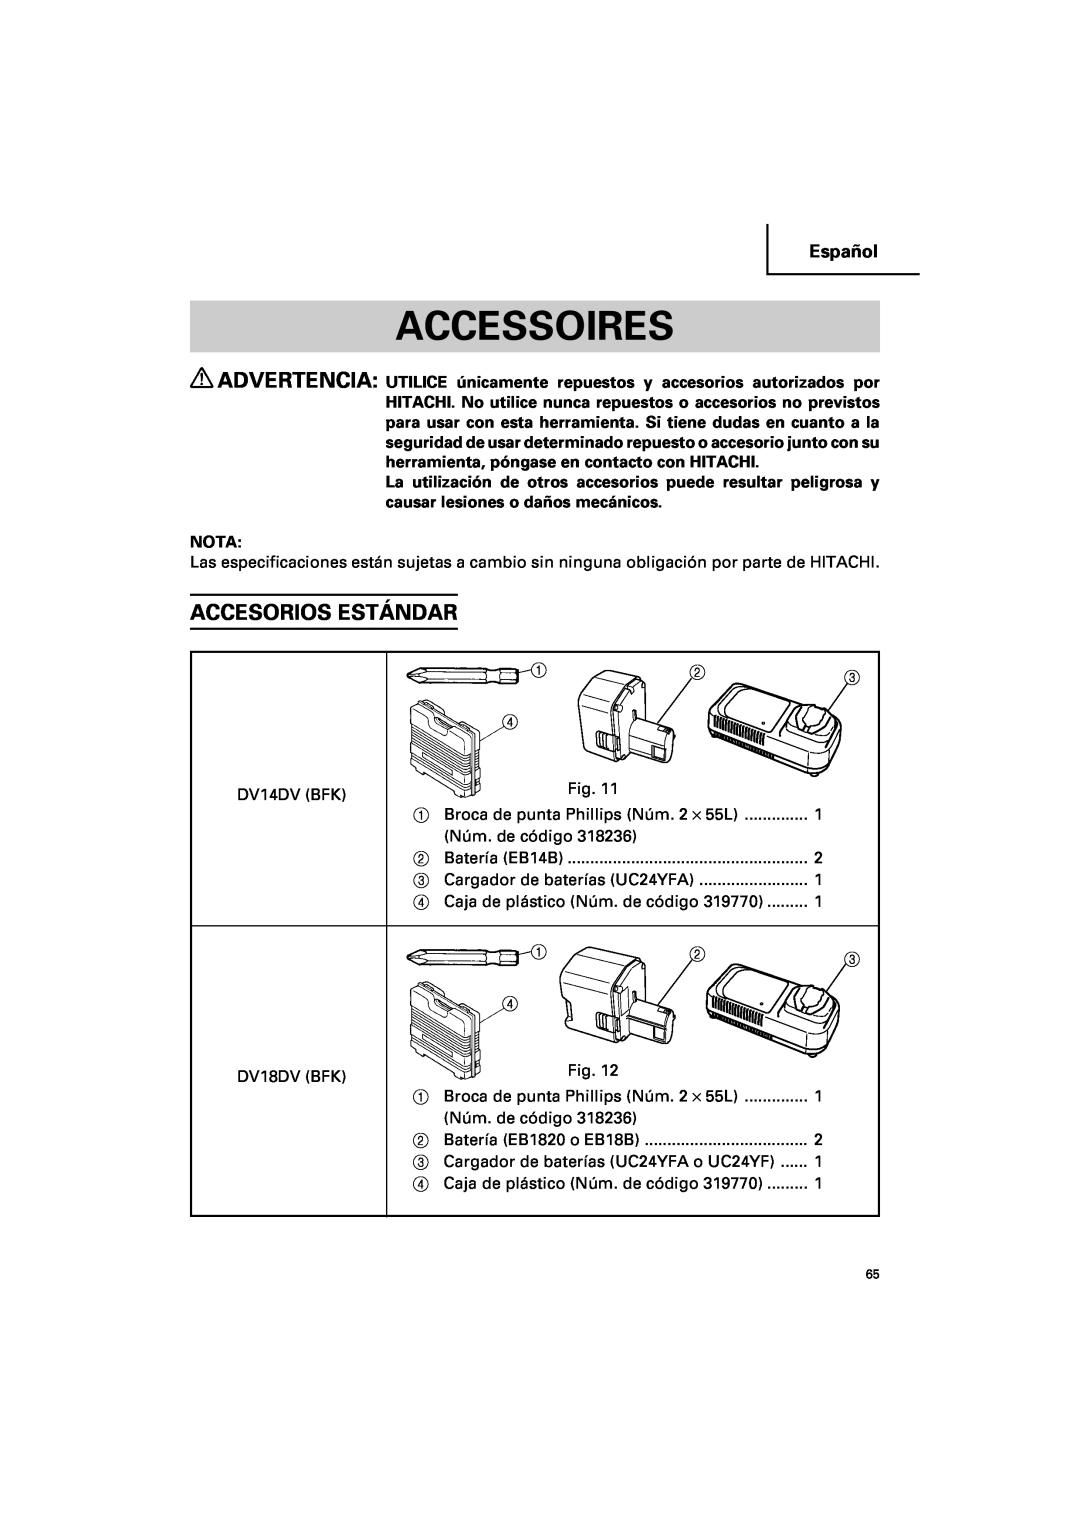 Hitachi DV 14DV, DV 18DV instruction manual Accesorios Estándar, Accessoires, Español, Batería EB14B, Batería EB1820 o EB18B 